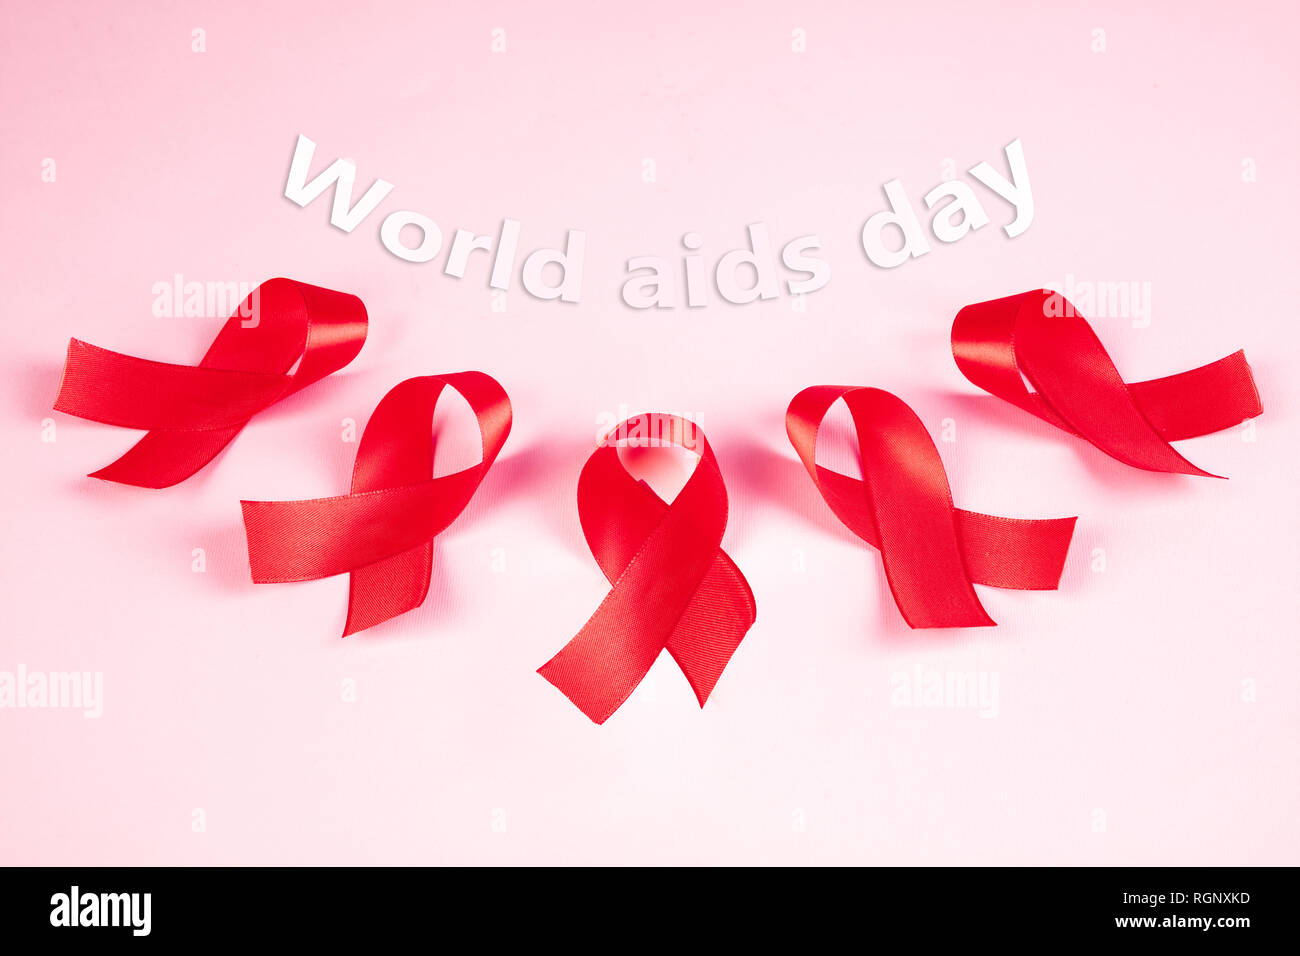 Signe de sensibilisation au sida de rubans rouges sur fond rose . Concept  de la Journée mondiale du sida. La santé, l'aide, de soins, de soutien,  d'espoir, de maladie, de soins de